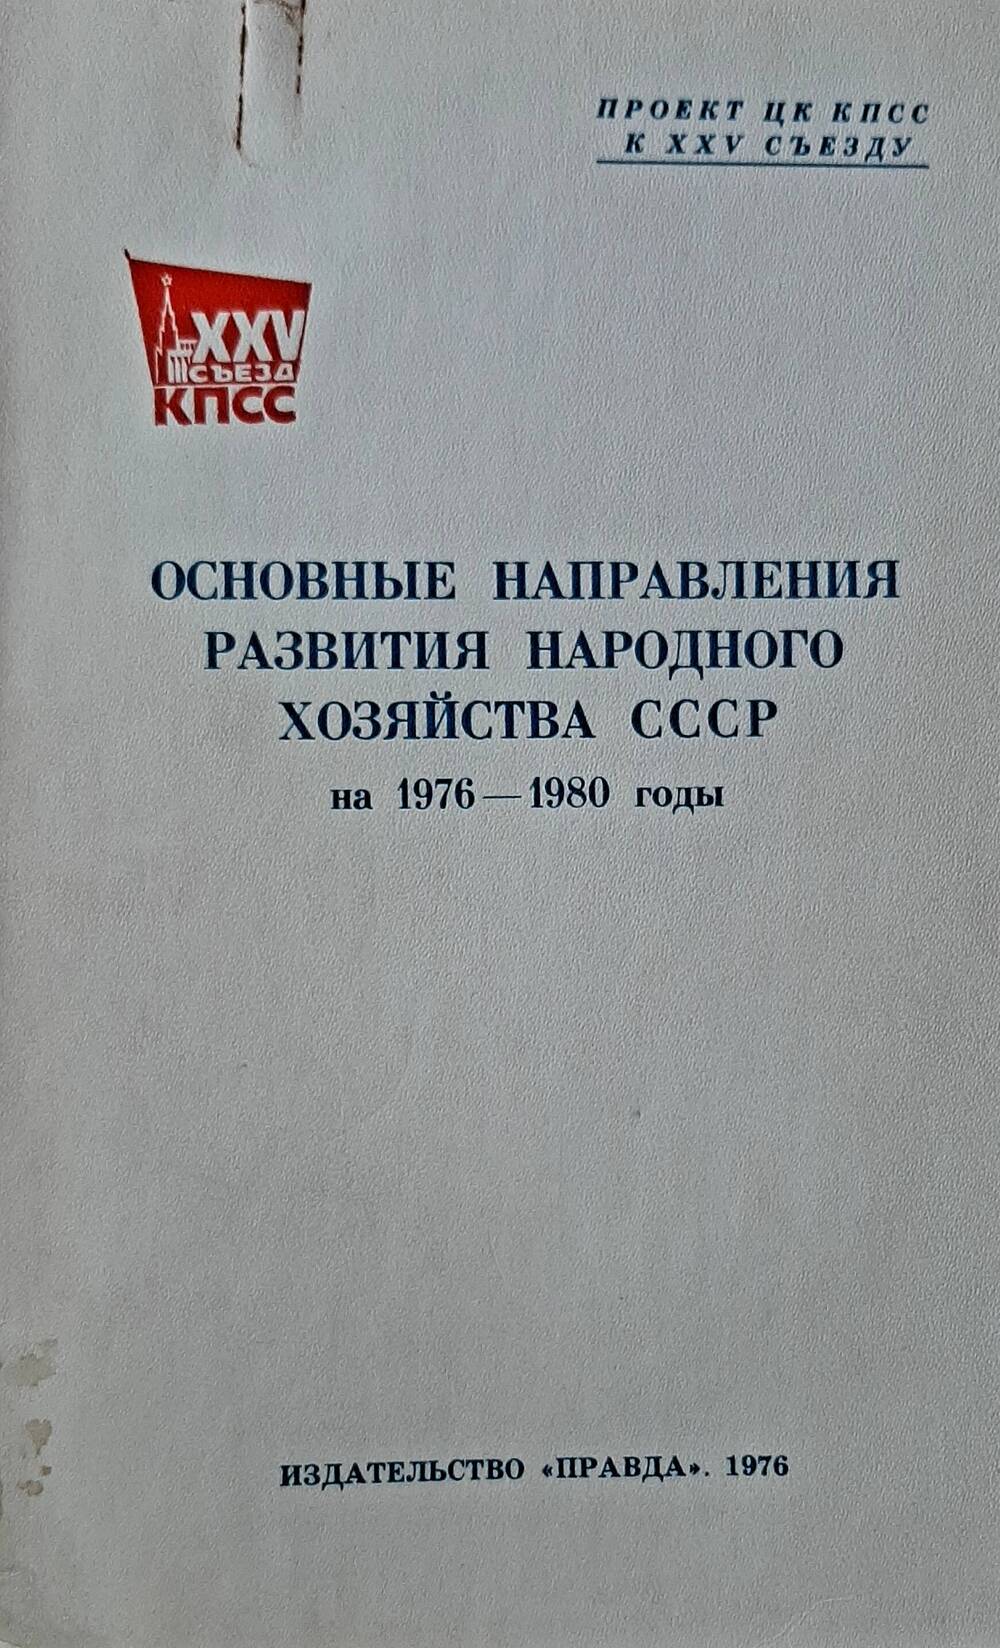 Брошюры  к 25 съезду КПСС, 1976 год:  (для делегата Ярусова);
Проекты по основному развитию нар. хозяйства 1976-1980гг